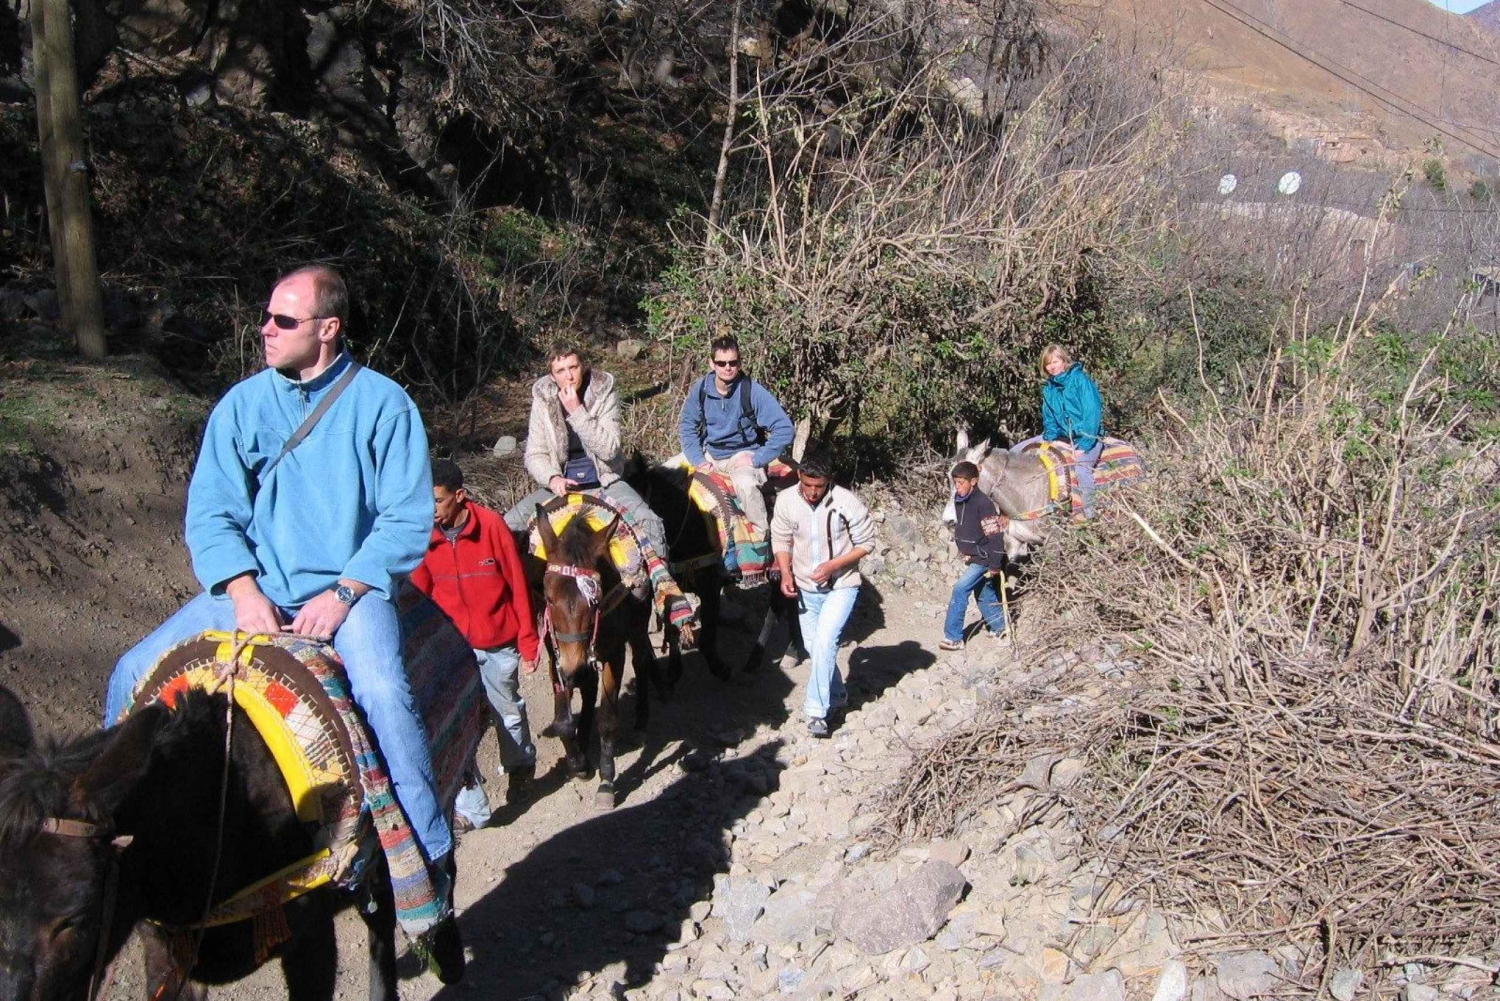 Mule ride in Atlas mountains